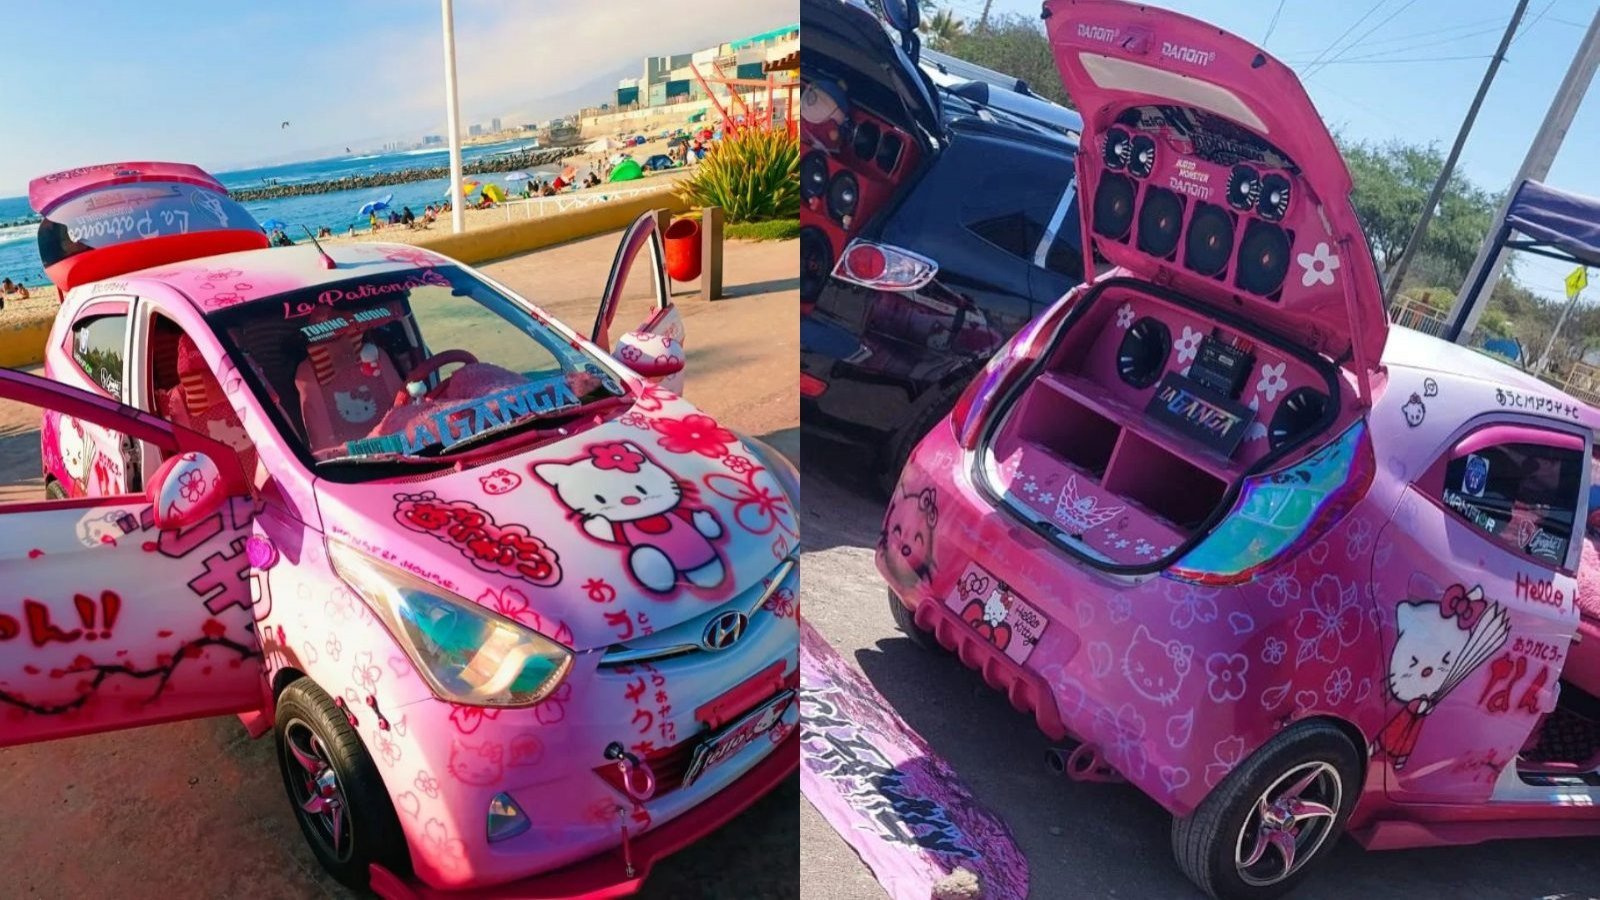 Furor en eventos de tuning por auto pintado de Hello Kitty